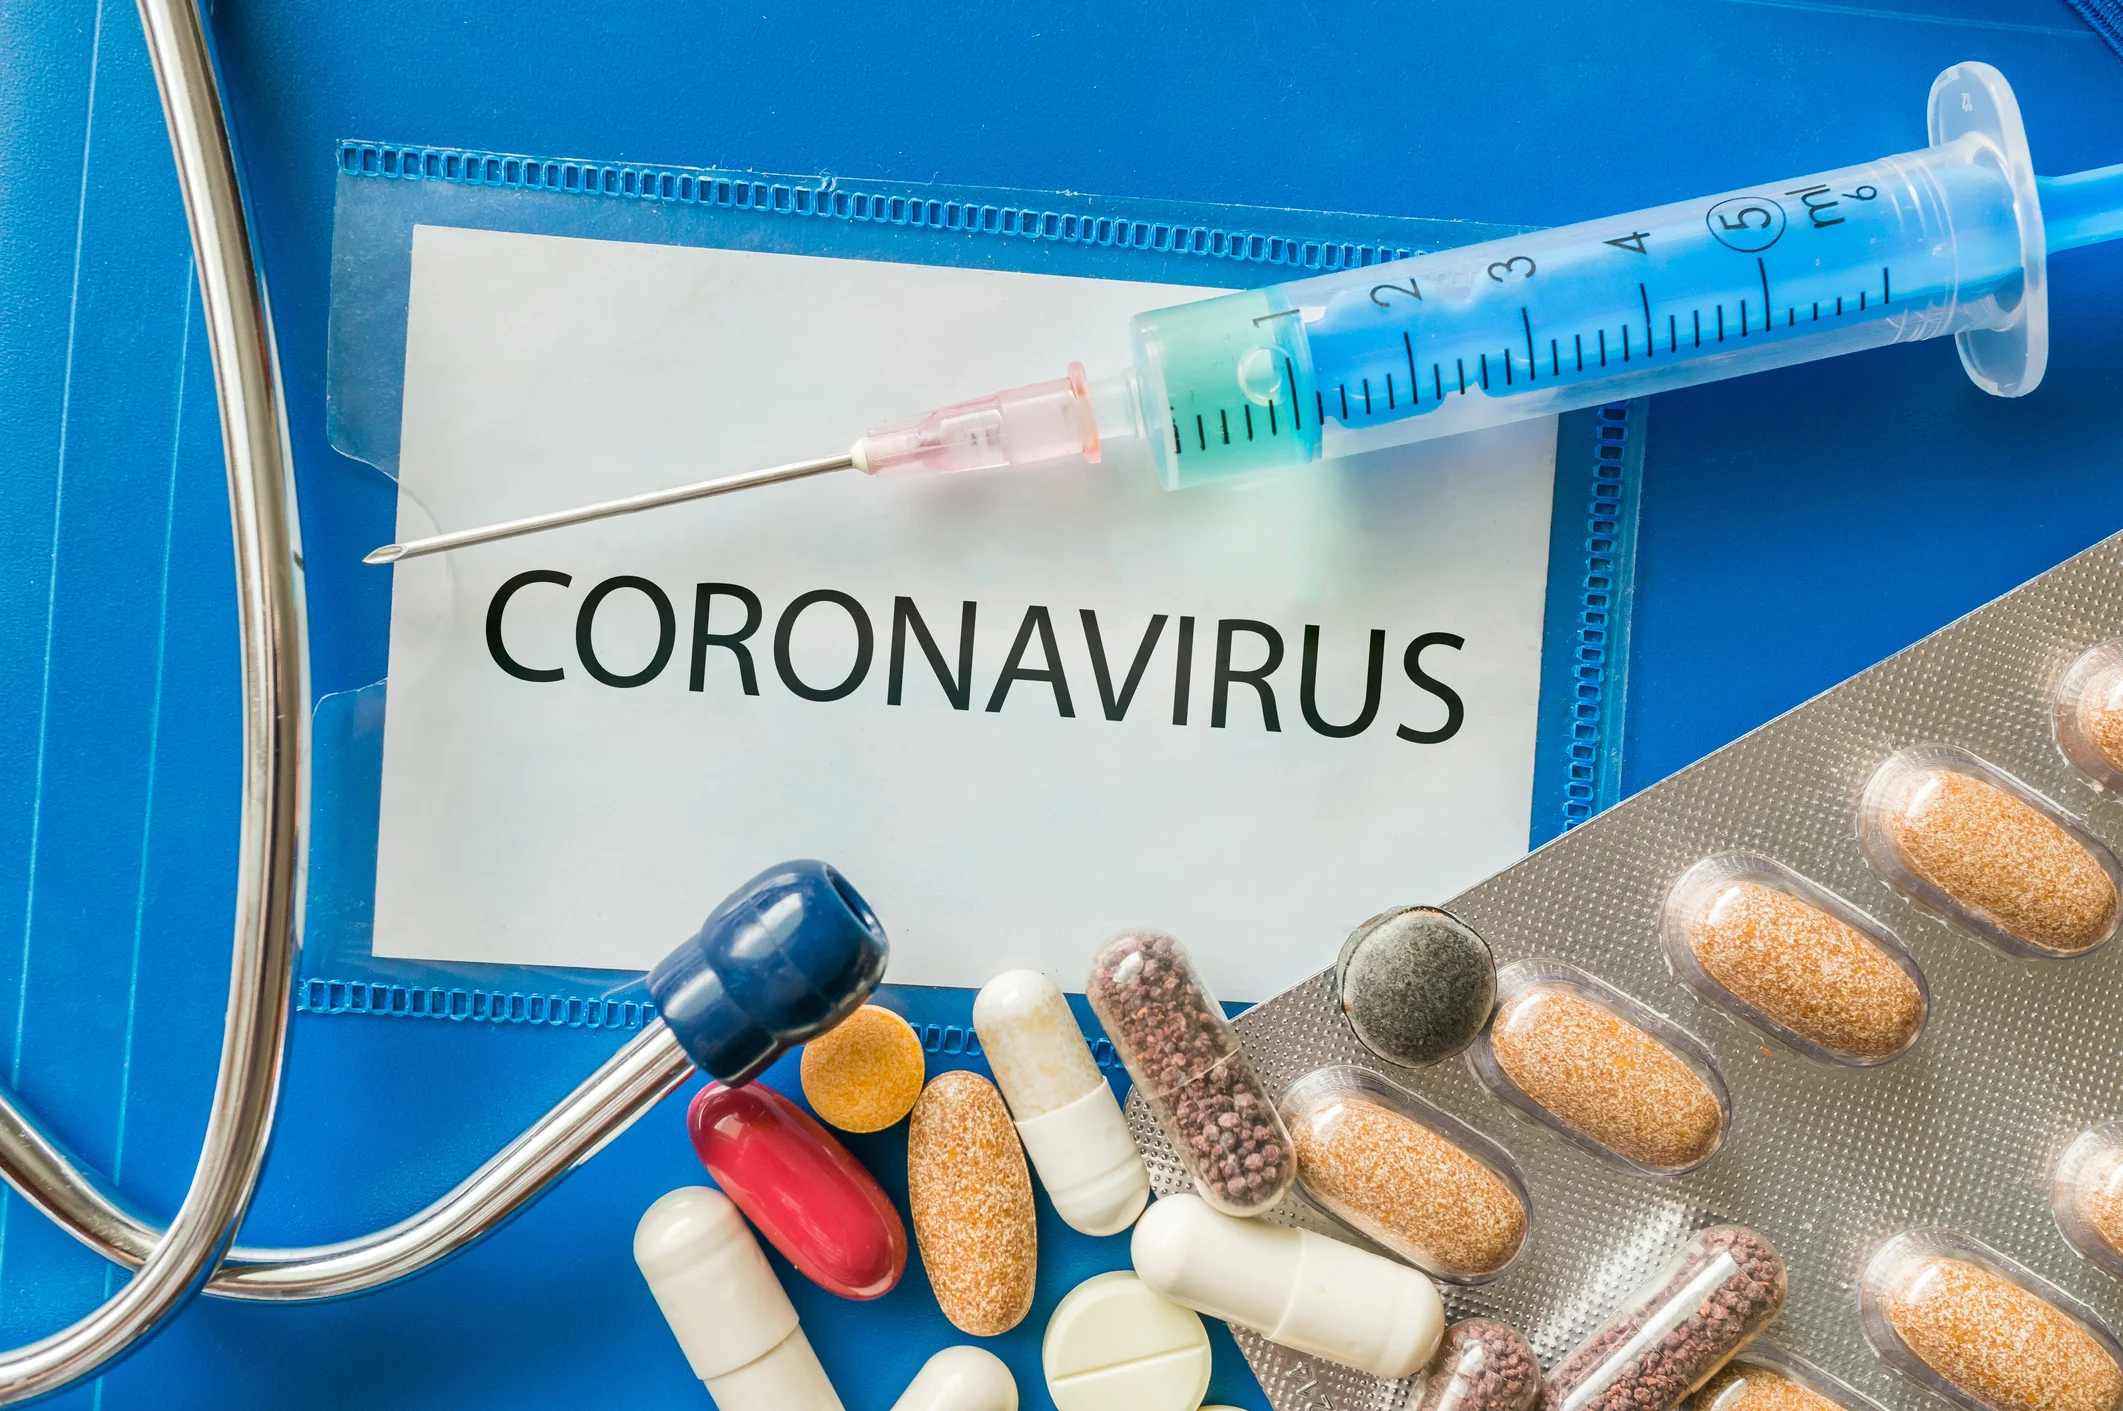 DSÖ'den dünyanın umudu olan koronavirüs aşısı hakkında endişelendiren uyarı